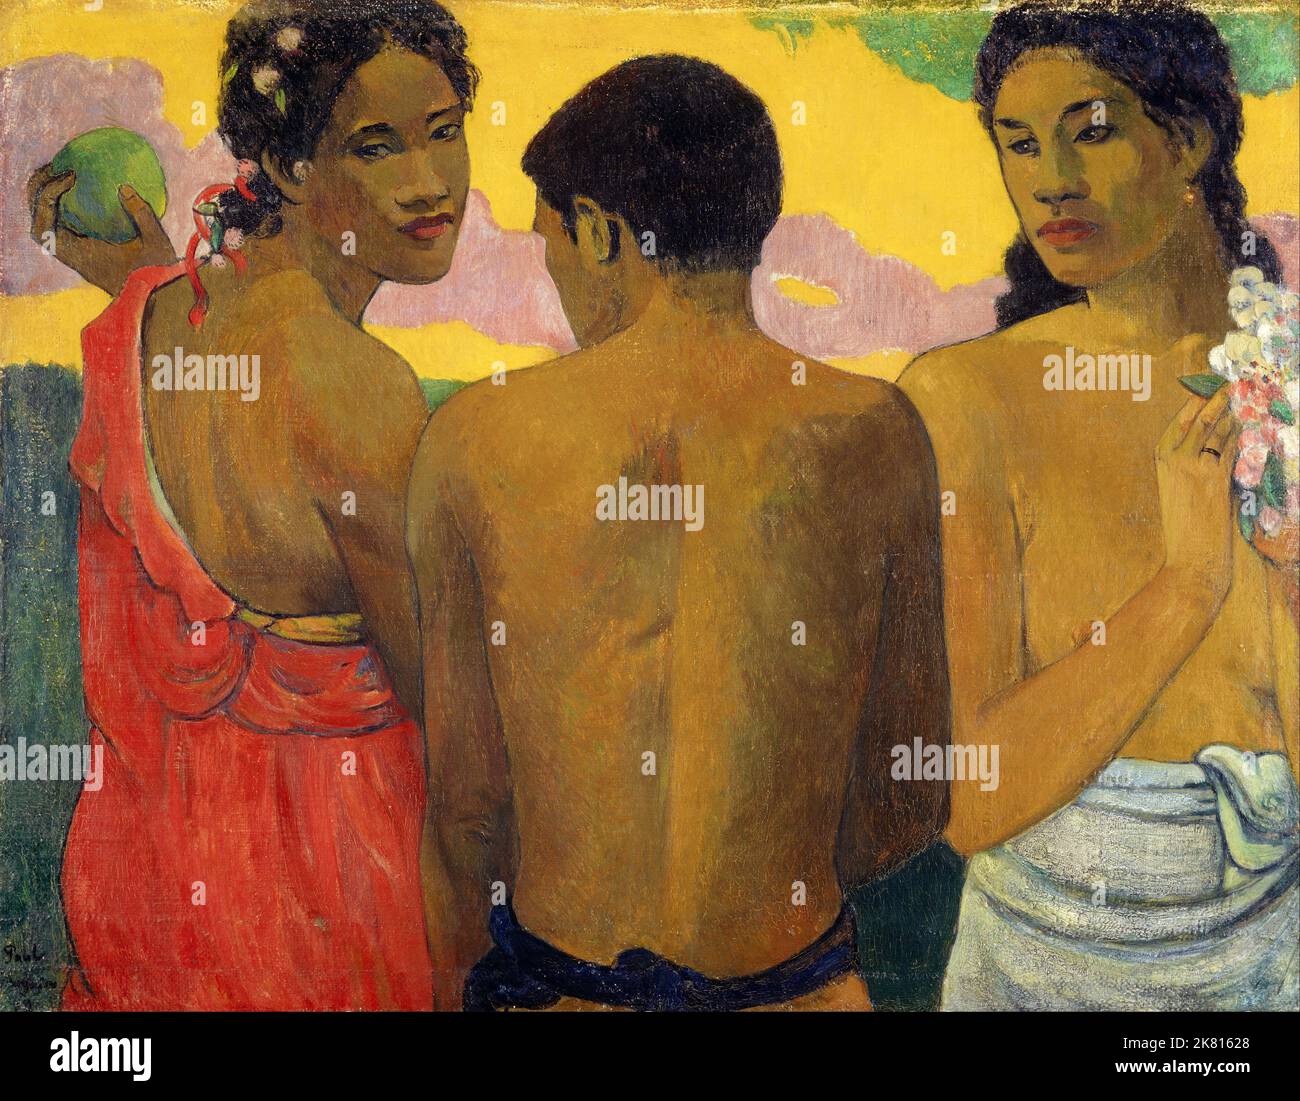 Tahiti: 'Drei Tahitianer'. Öl auf Leinwand von Paul Gauguin (7. Juni 1848 - 8. Mai 1903), 1899. Paul Gauguin wurde 1848 in Paris geboren und verbrachte einen Teil seiner Kindheit in Peru. Er arbeitete als Börsenmakler mit wenig Erfolg und litt an schweren Depressionen. Er malte auch. 1891 segelte Gauguin, frustriert durch mangelnde Anerkennung zu Hause und finanziell mittellos, in die Tropen, um der europäischen Zivilisation und "allem, was künstlich und konventionell ist" zu entkommen. Seine Zeit dort, vor allem in Tahiti und den Marquesas-Inseln, war das Thema von großem Interesse. Stockfoto